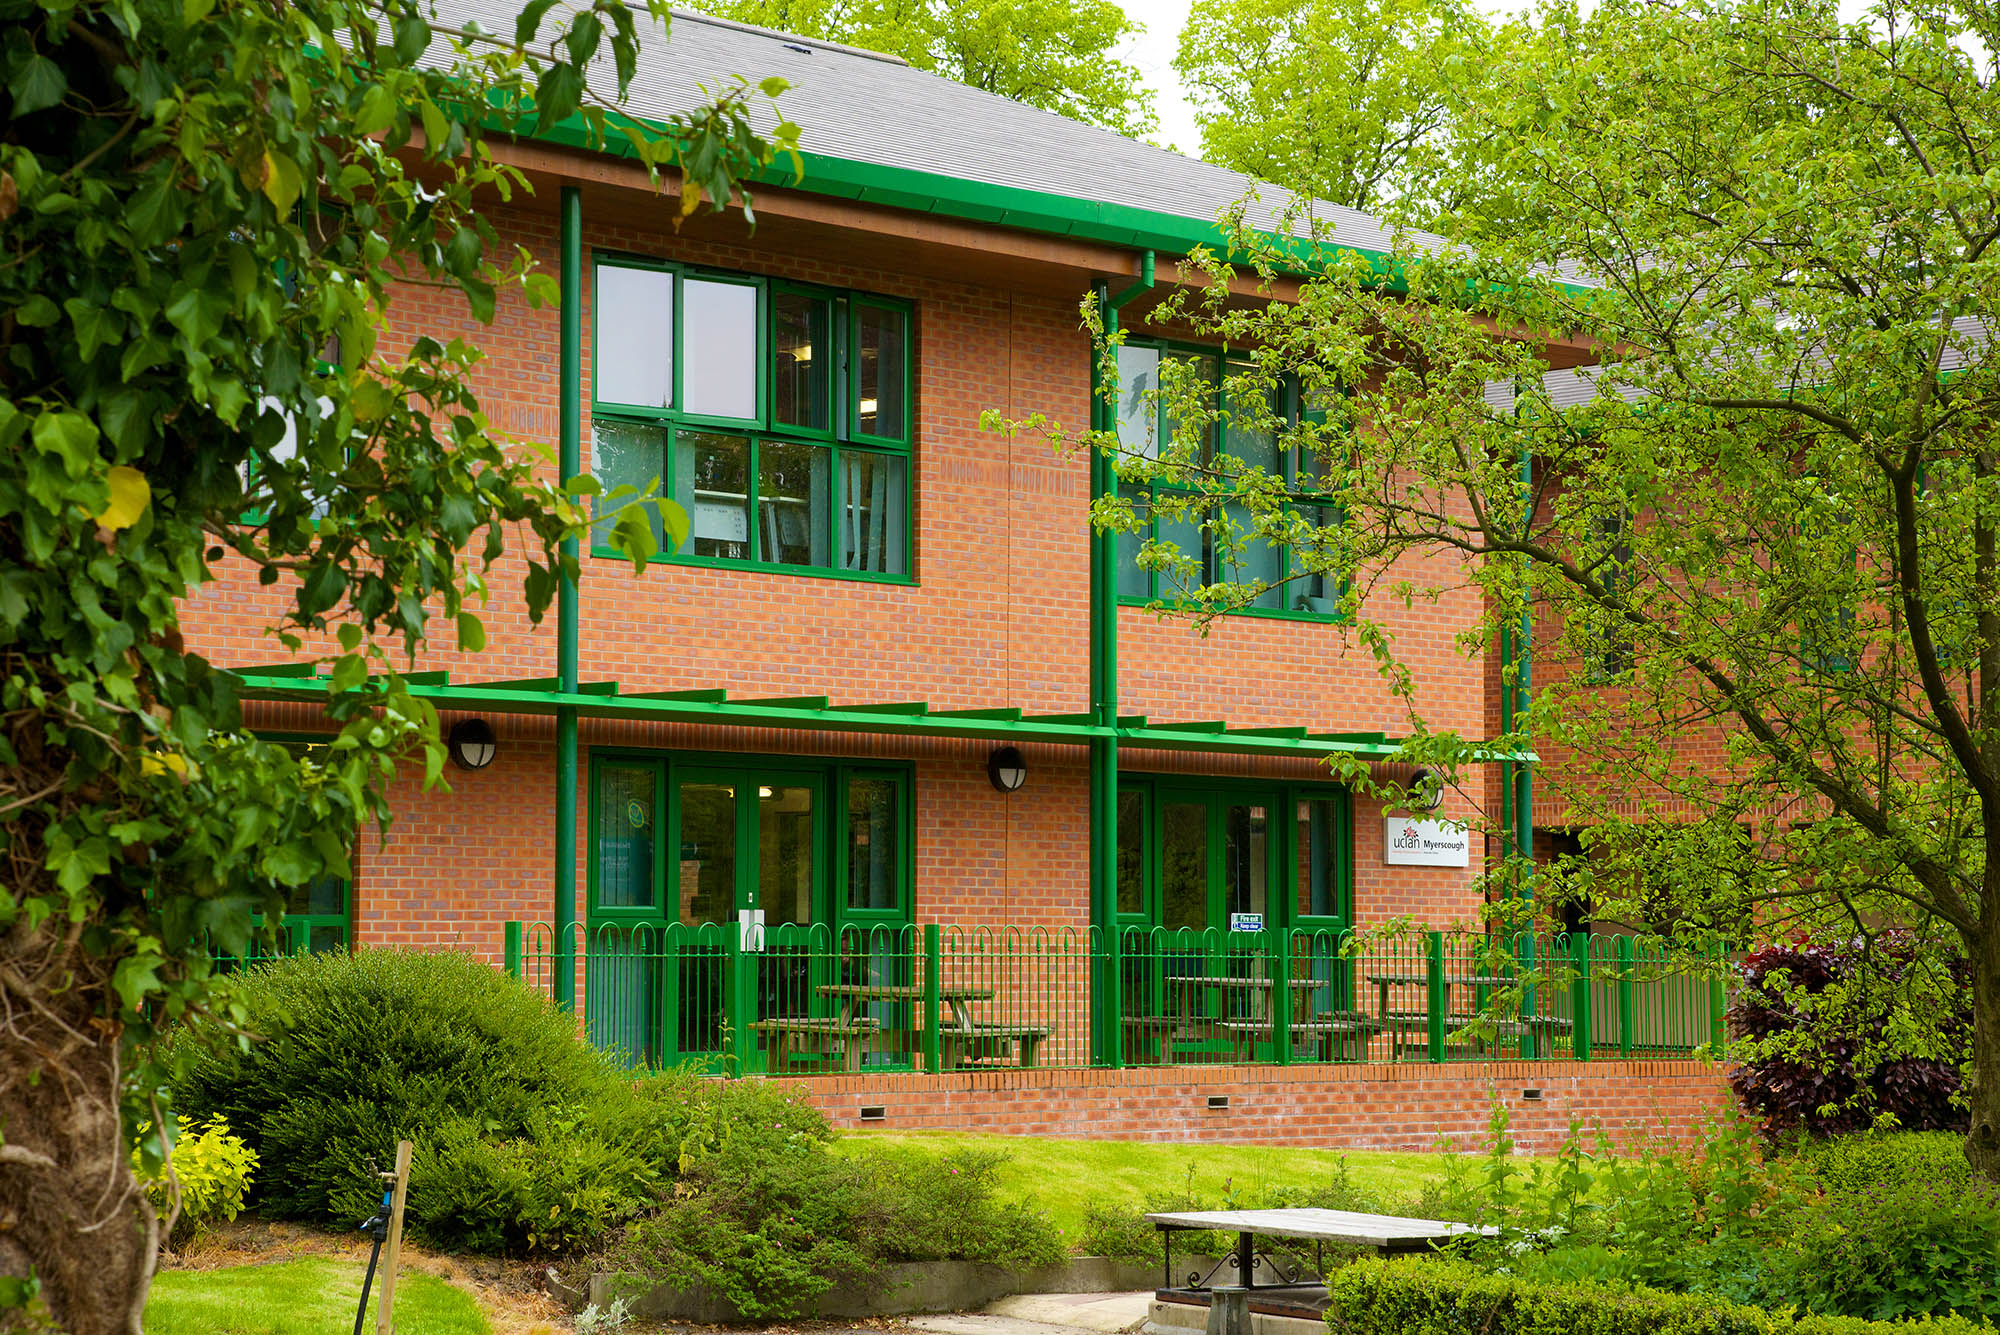 University Centre Myerscough's Higher Education Centre